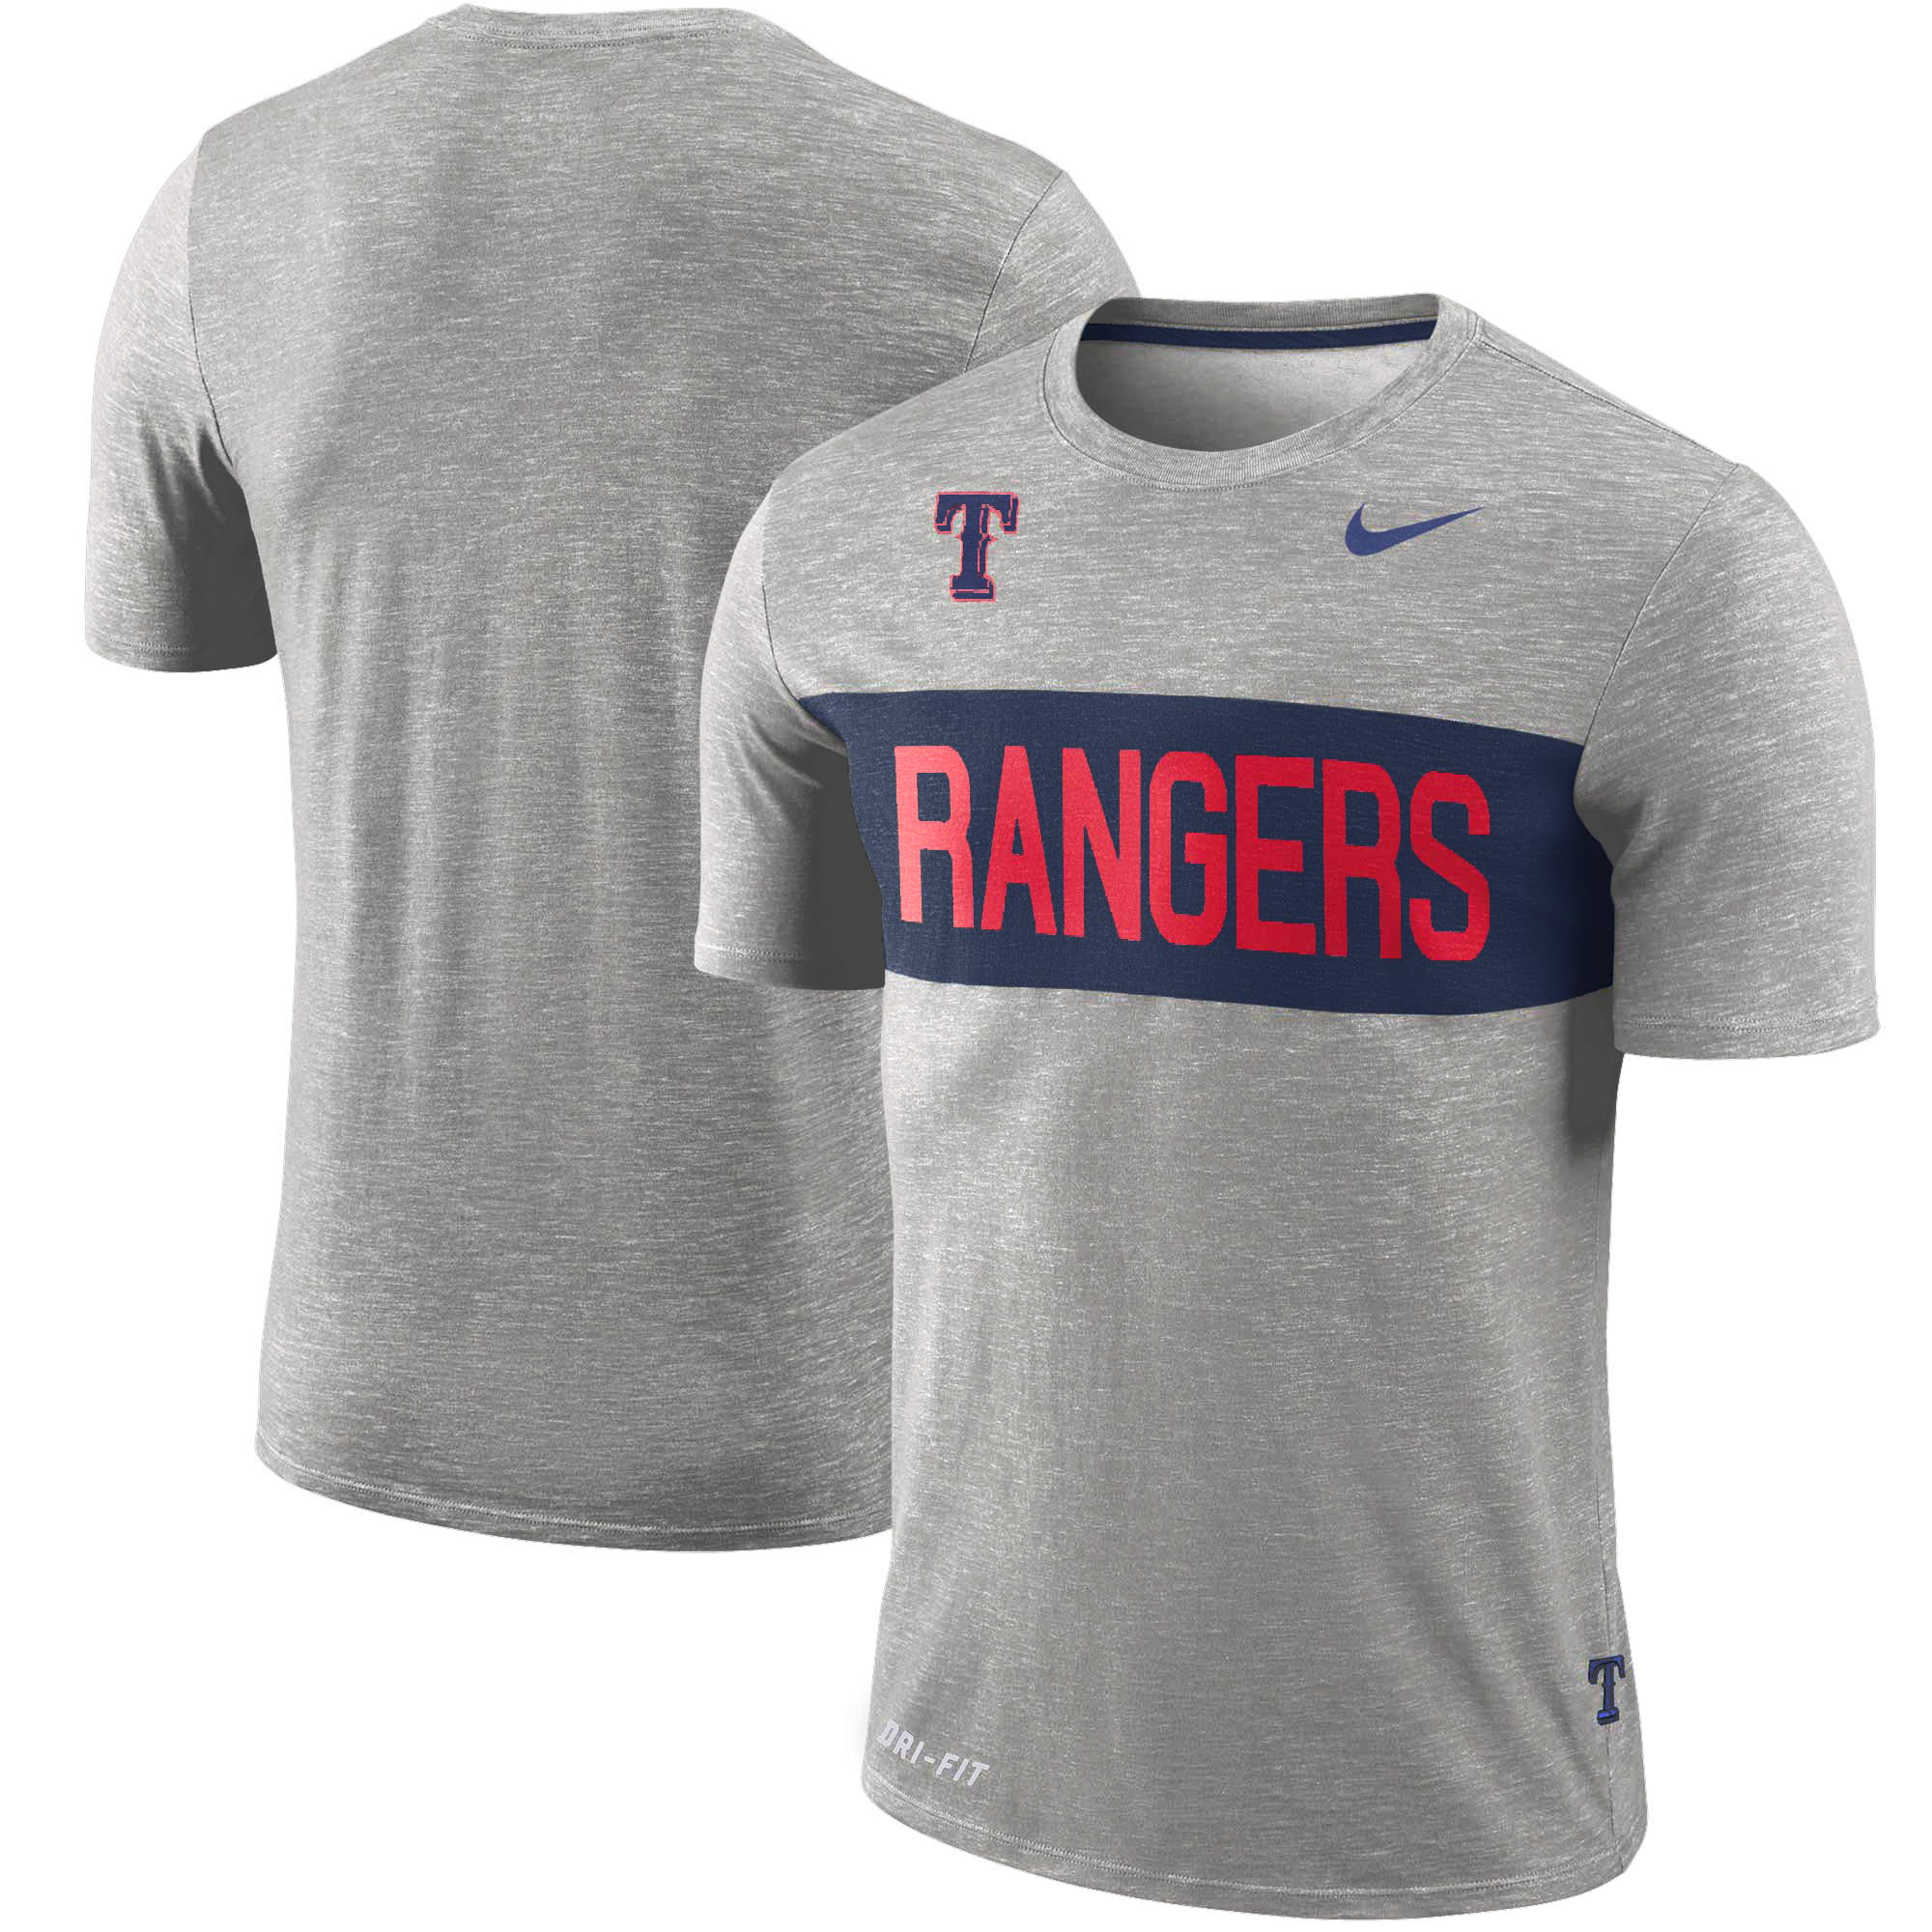 rangers dri fit shirt